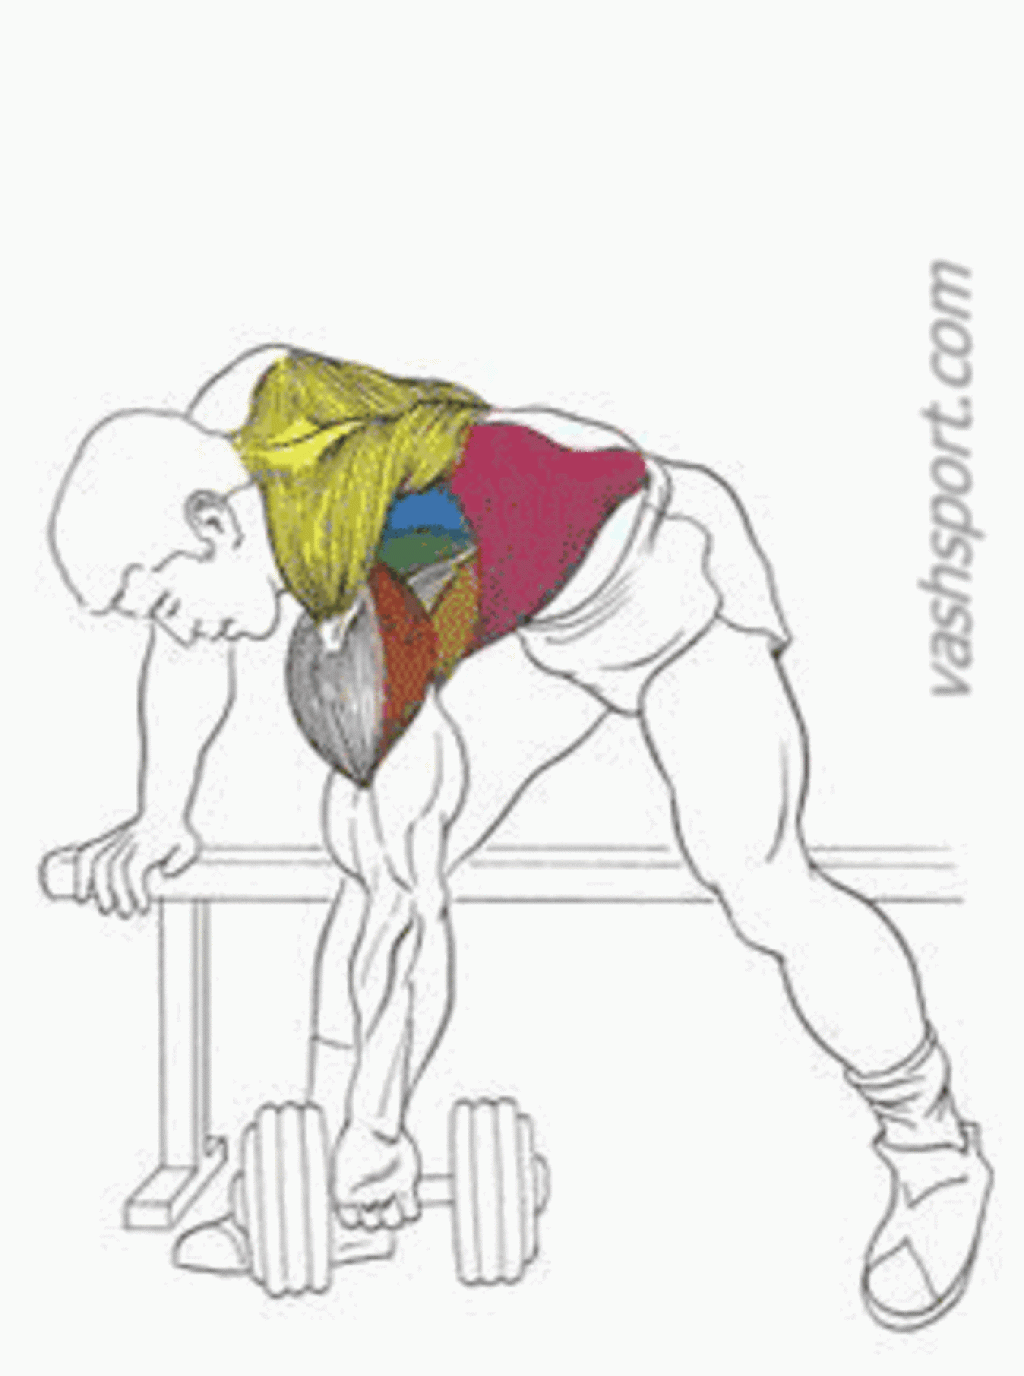 Как накачать спину: упражнения, программа тренировок накачать мышцы спины